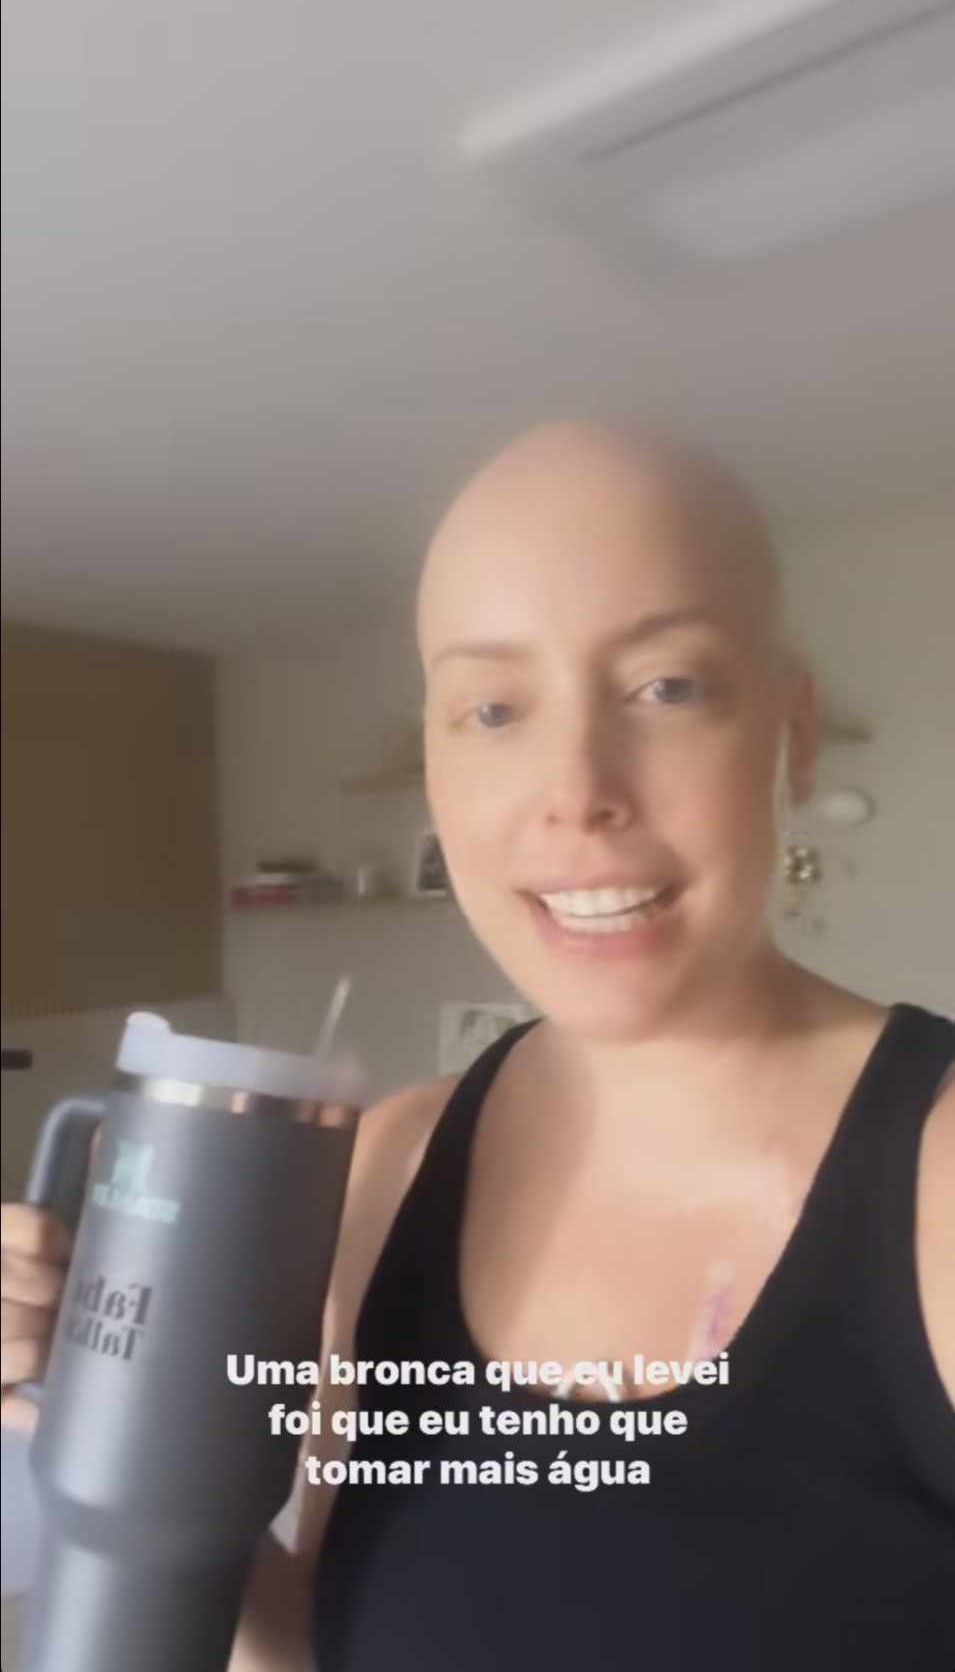 Fabiana Justus leva bronca durante tratamento contra câncer: "Puxão de orelha"